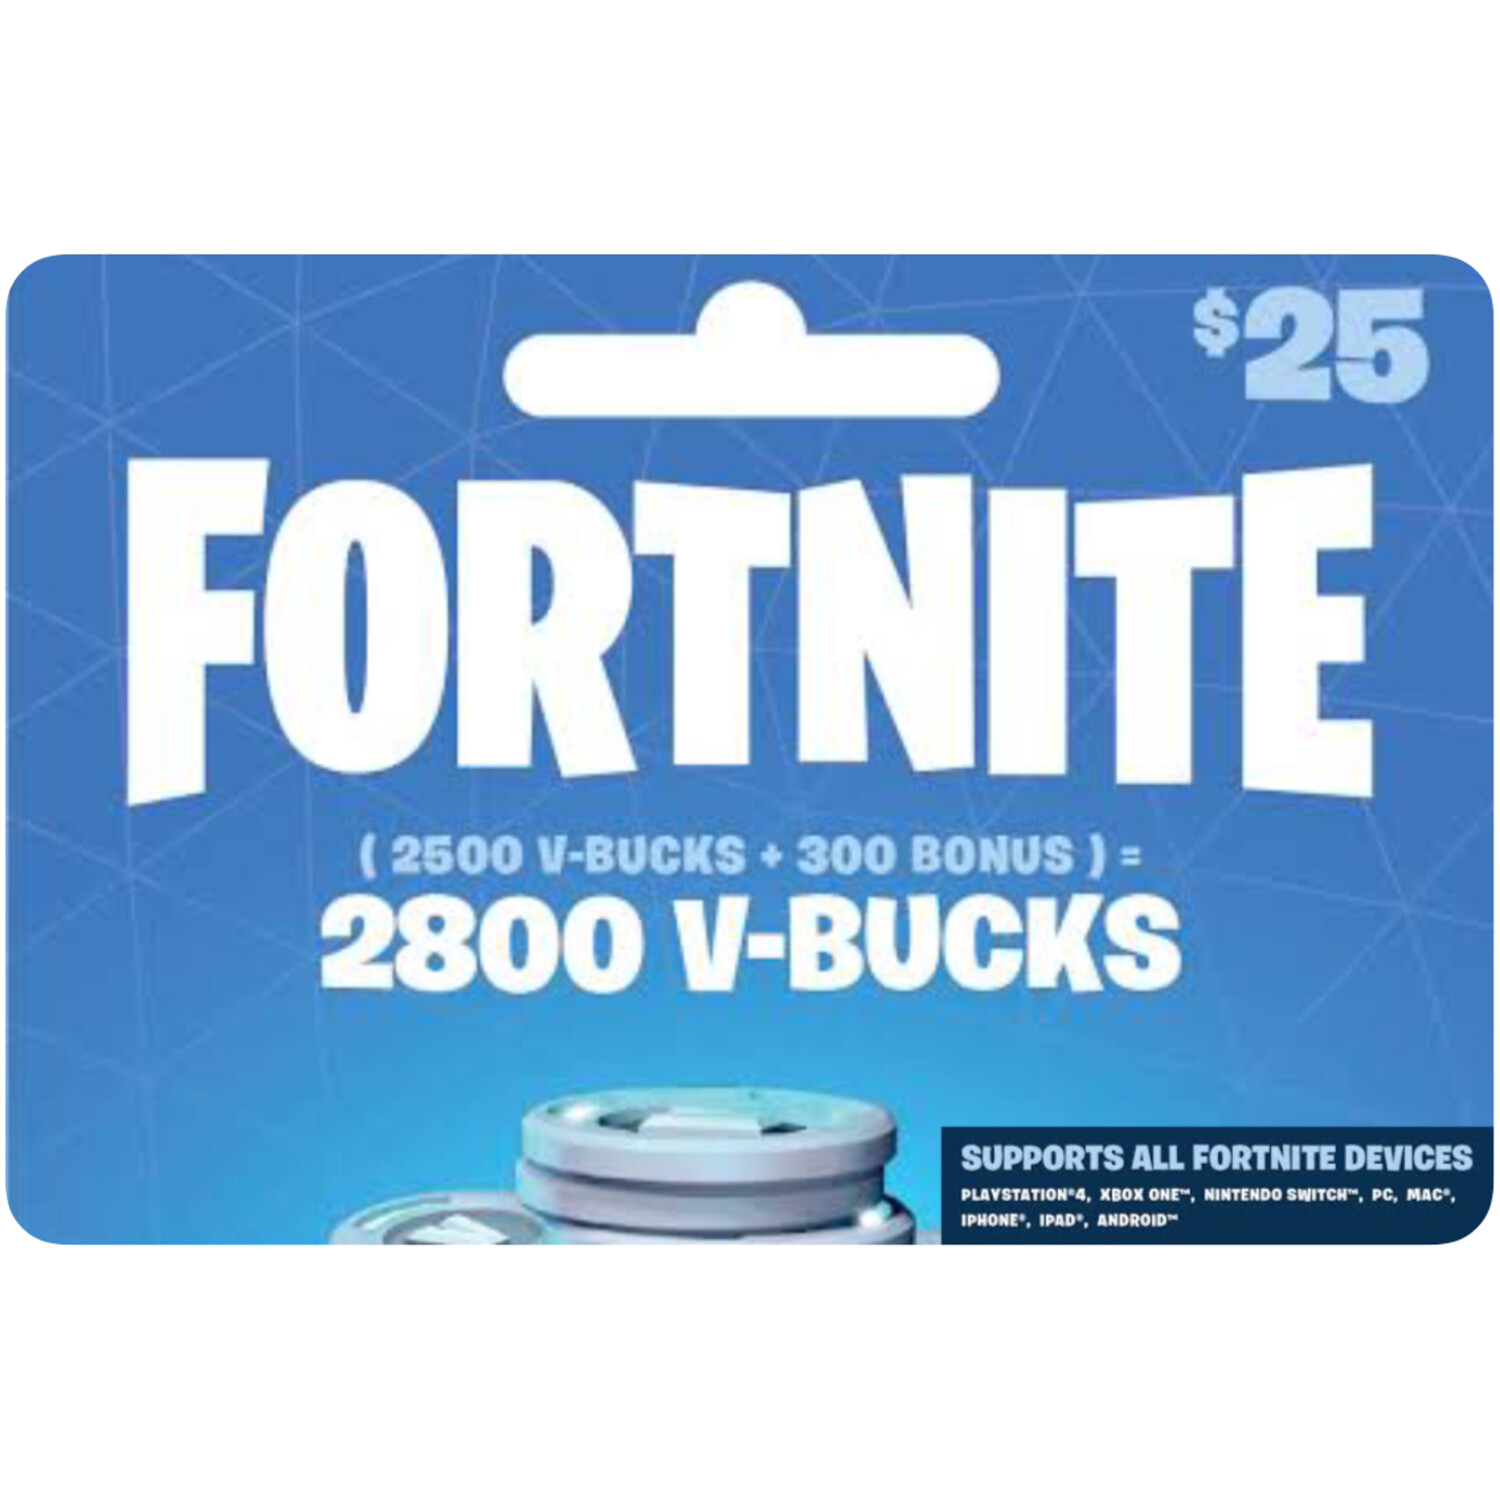 Fortnite 2800 V-Bucks $25 Gift Card